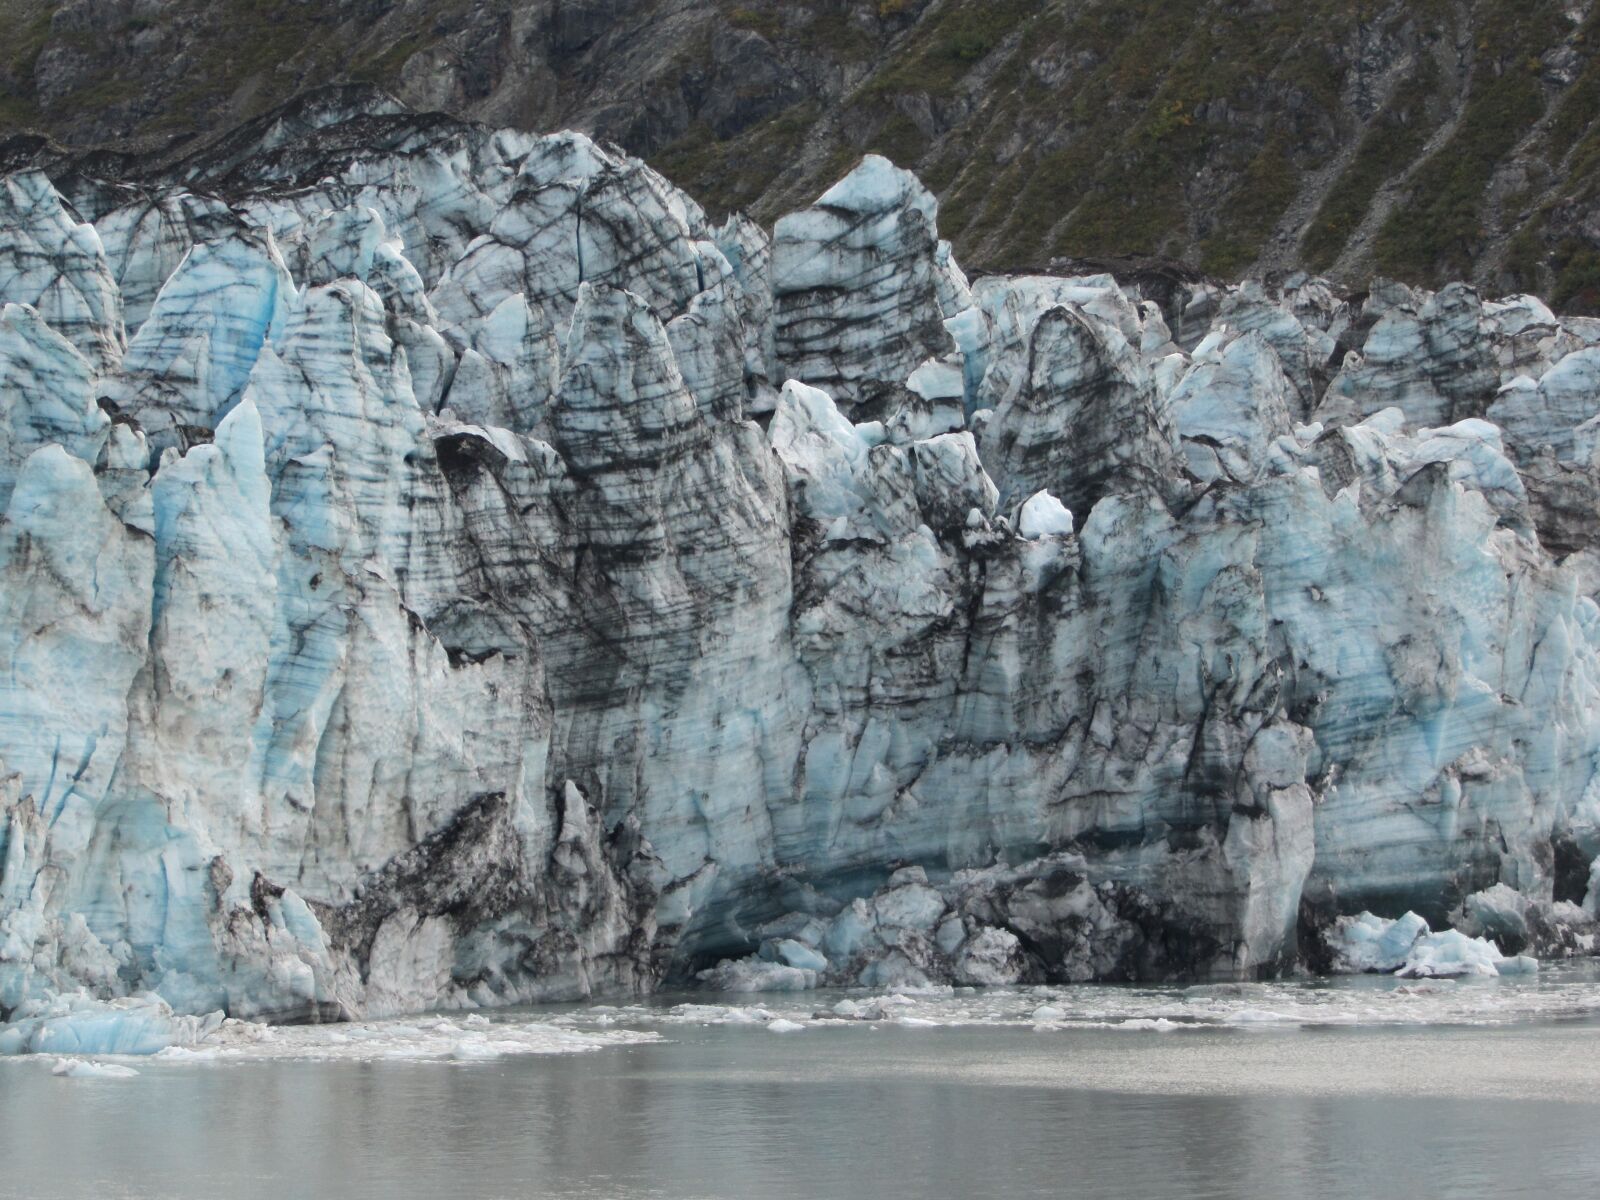 Canon PowerShot SD4500 IS (IXUS 1000 HS / IXY 50S) sample photo. Glacier, ice, arctic photography